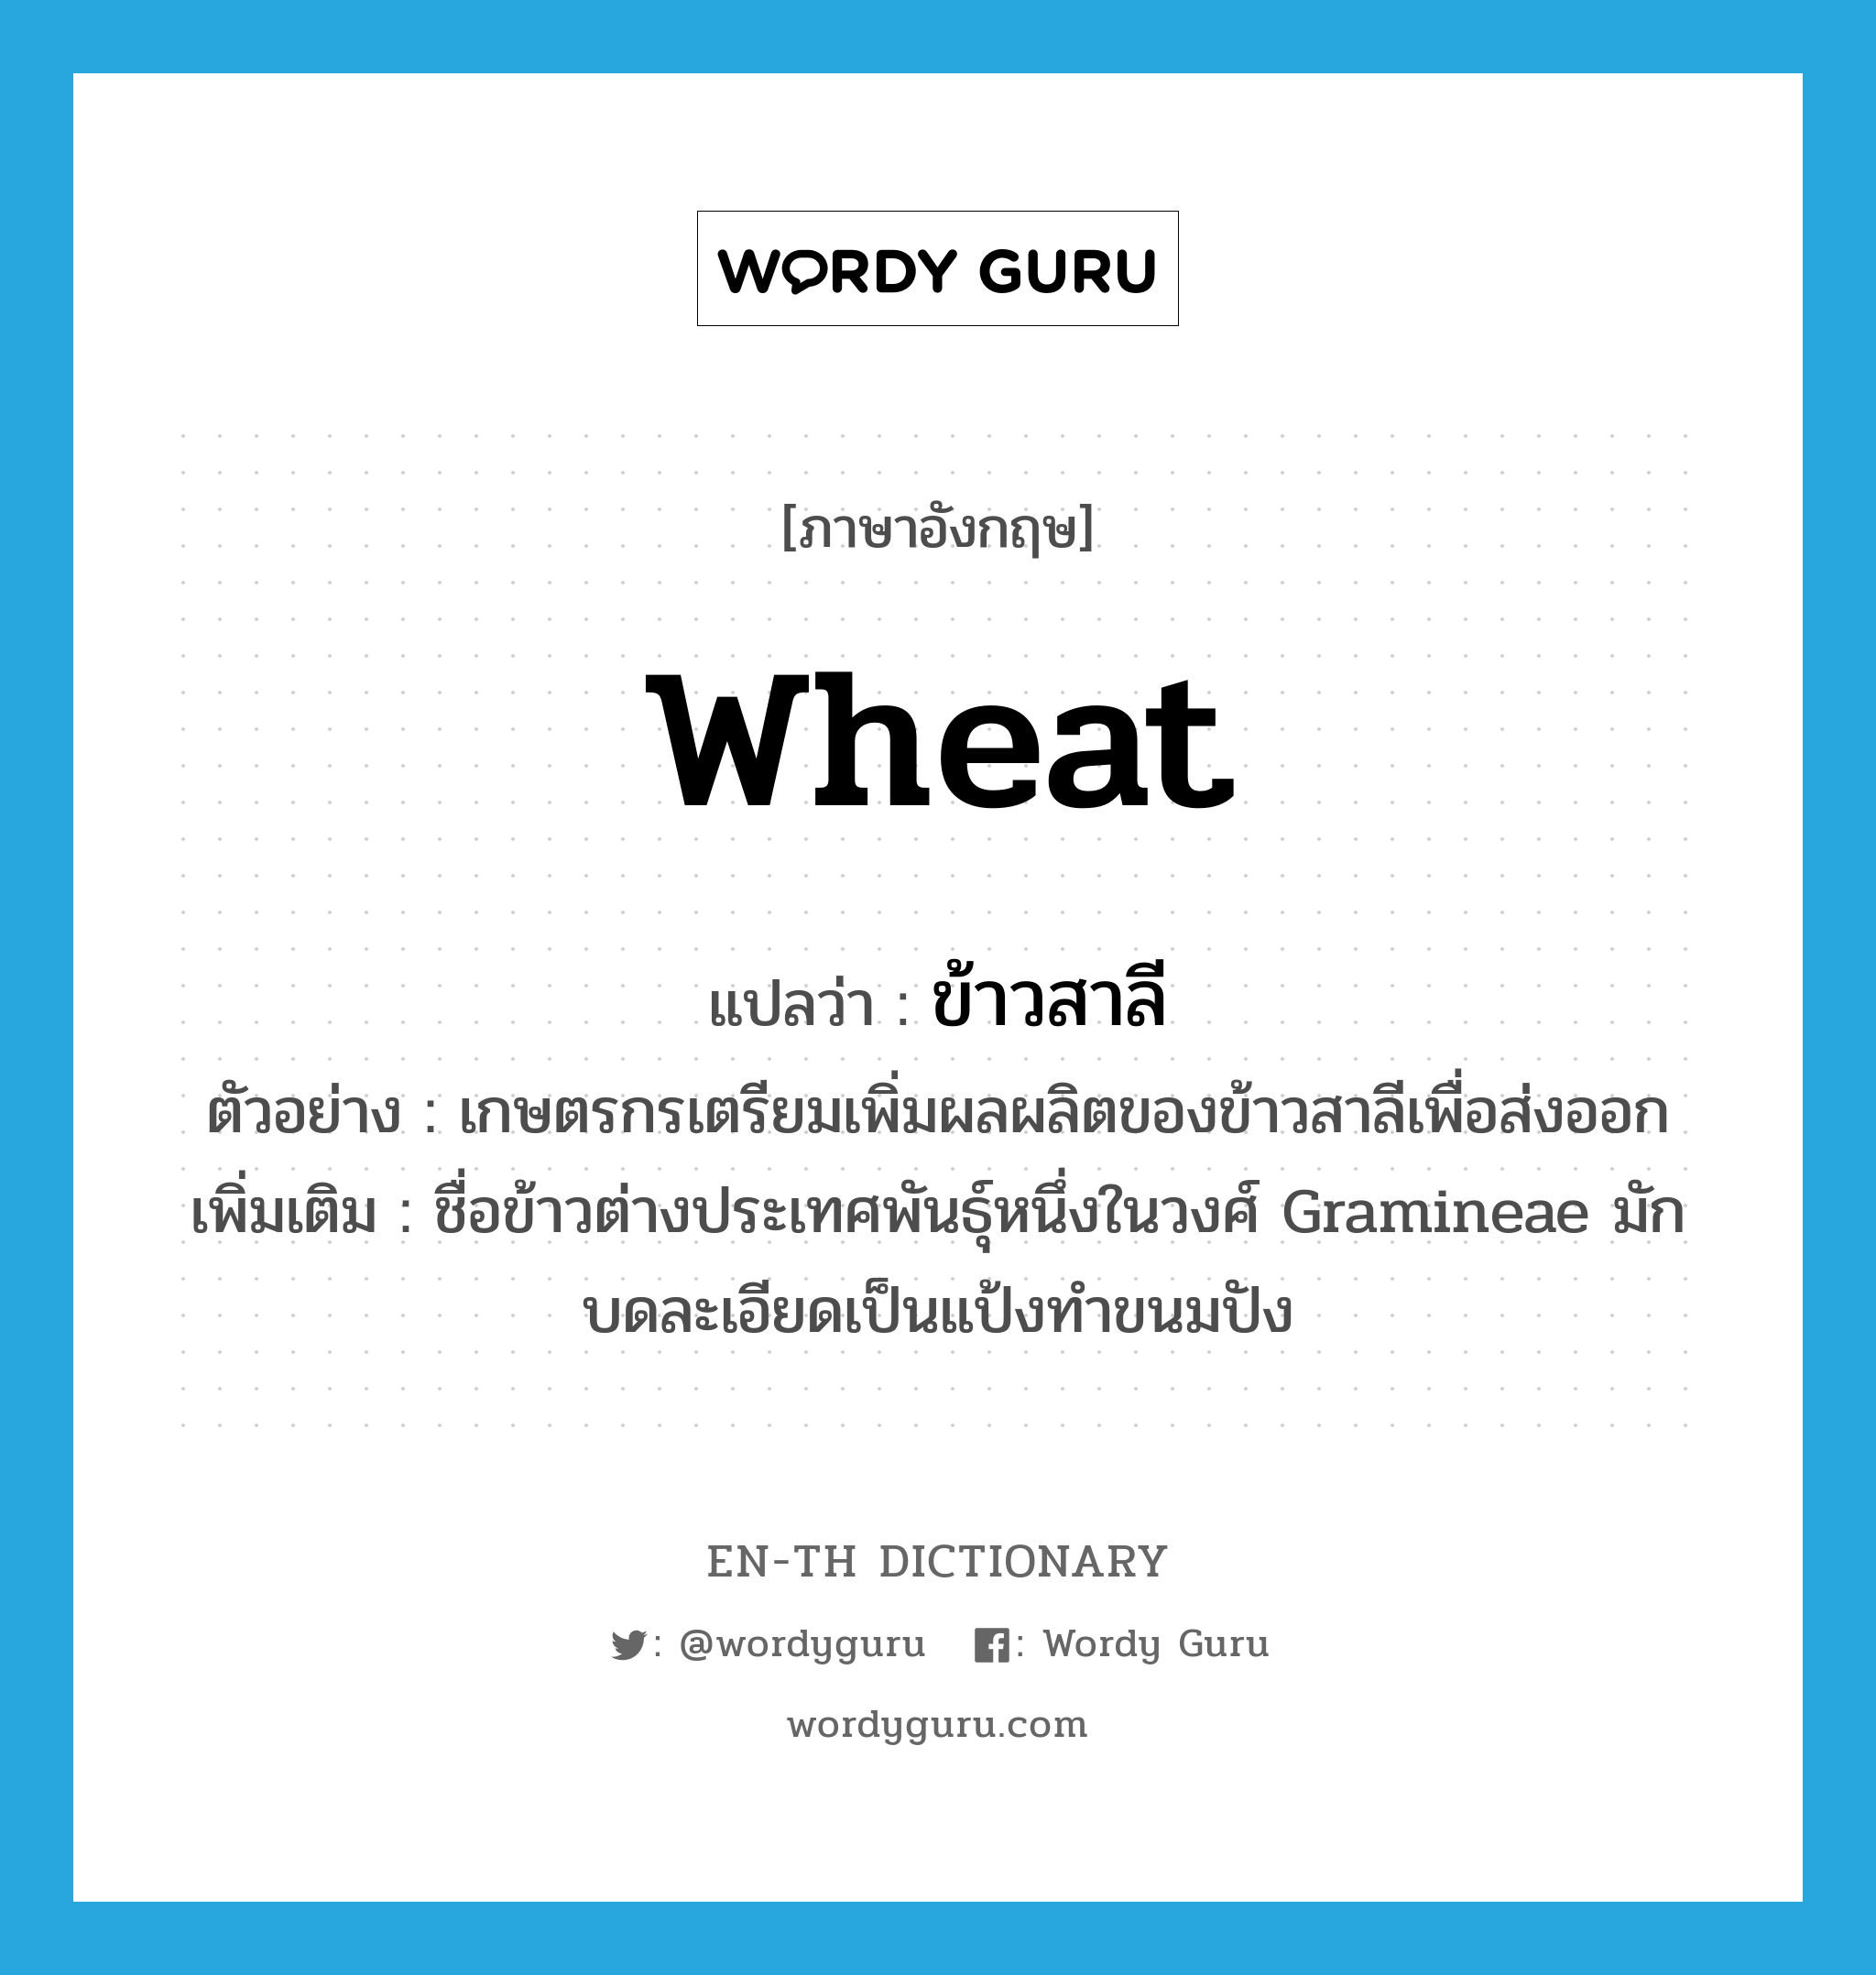 wheat แปลว่า?, คำศัพท์ภาษาอังกฤษ wheat แปลว่า ข้าวสาลี ประเภท N ตัวอย่าง เกษตรกรเตรียมเพิ่มผลผลิตของข้าวสาลีเพื่อส่งออก เพิ่มเติม ชื่อข้าวต่างประเทศพันธุ์หนึ่งในวงศ์ Gramineae มักบดละเอียดเป็นแป้งทำขนมปัง หมวด N